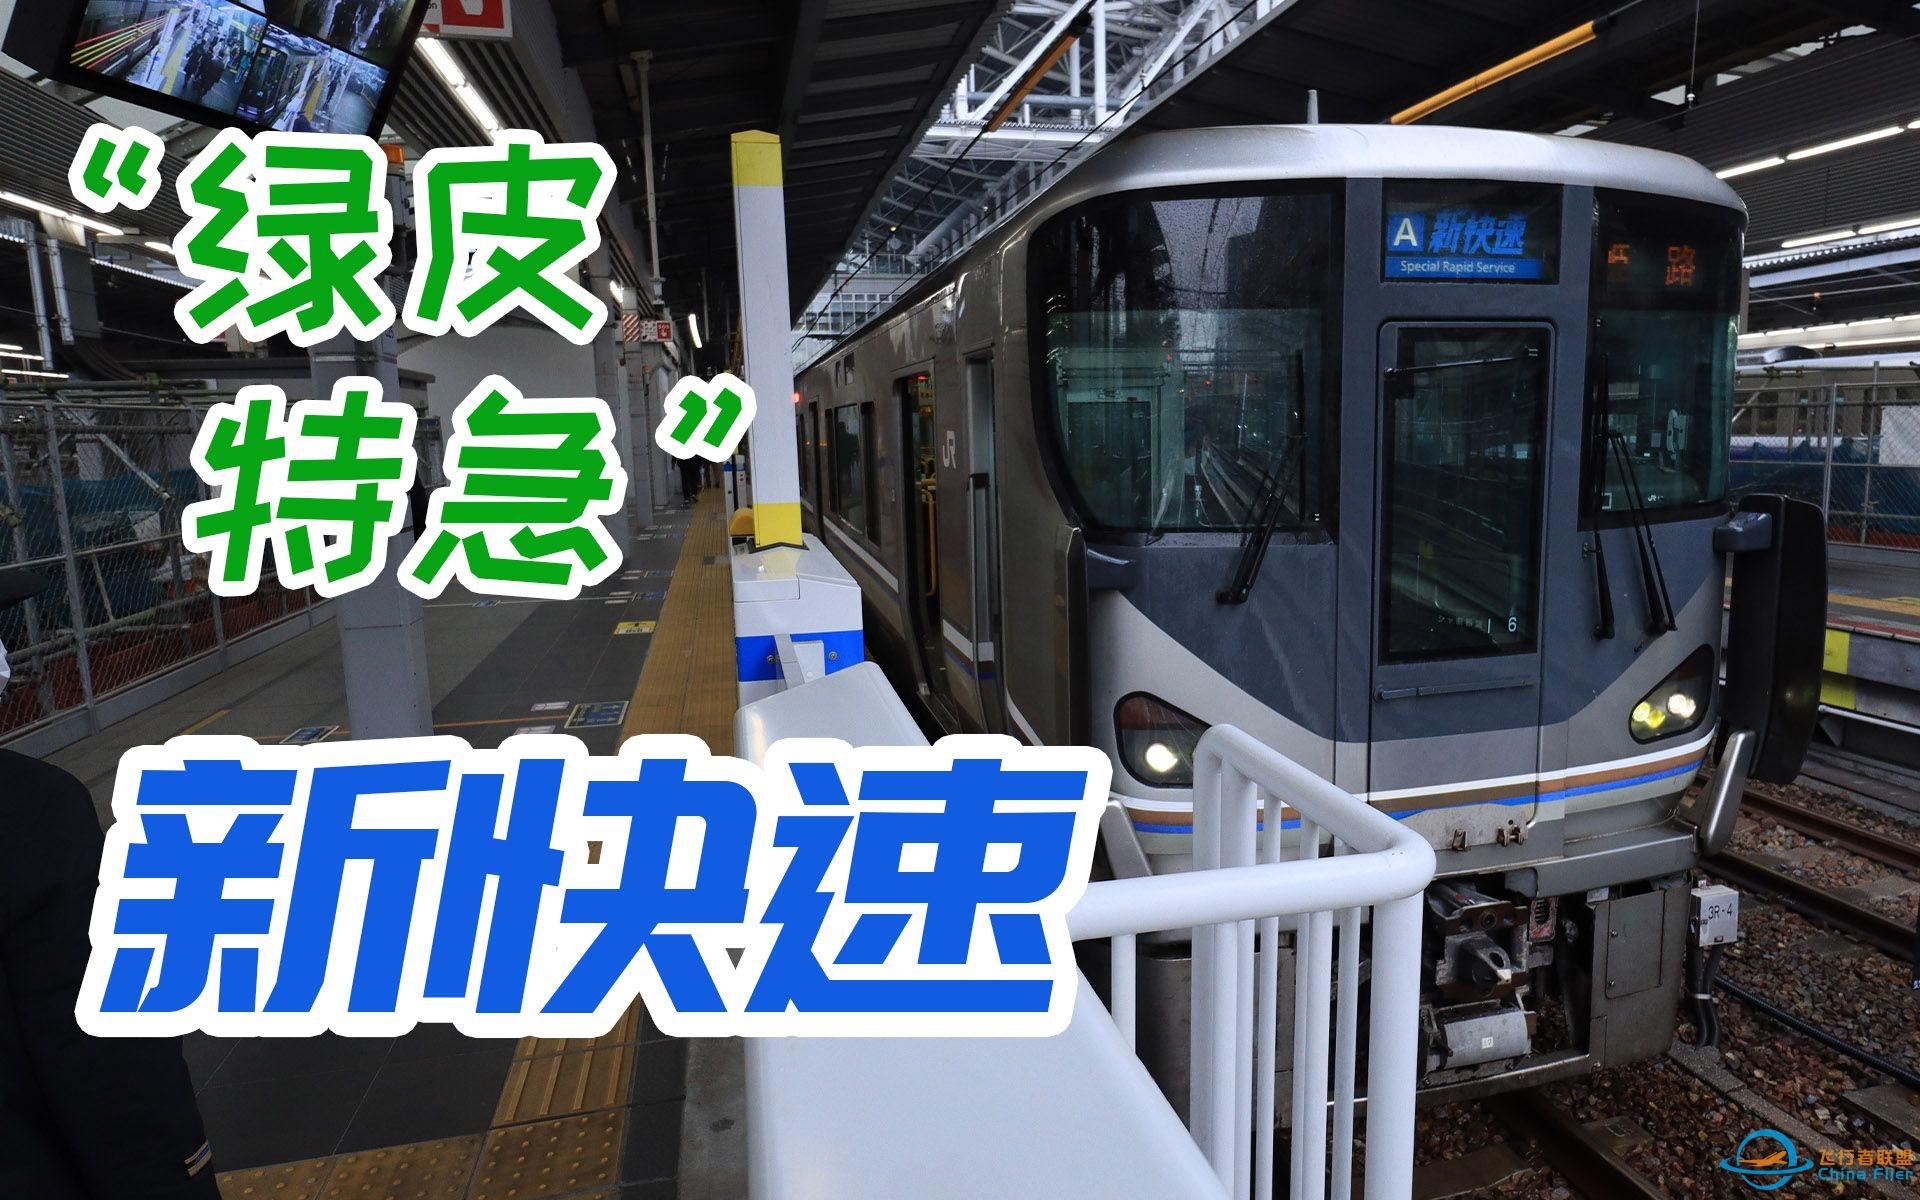 绿皮特急？JR西日本“新快速”列车飞行体验-5460 